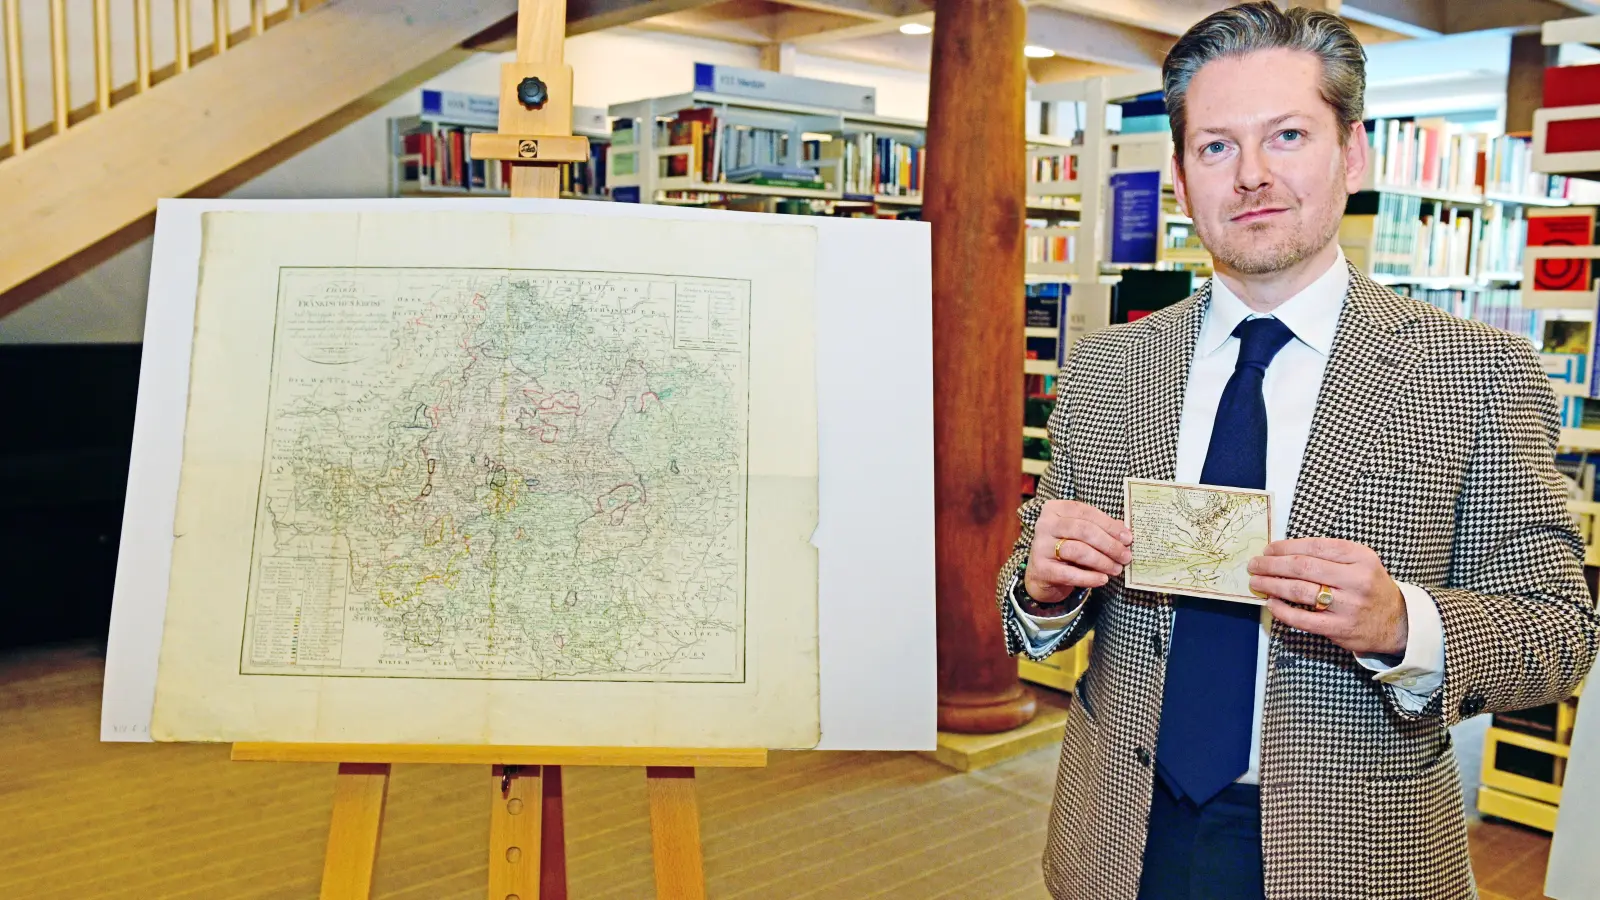 Die große „Charte von dem Fränkischen Kreise“ von 1804 gehört zu den restaurierten Karten. Bibliotheksleiter Christian Mantsch zeigt noch eine kleine Karte mit der Schlacht von Landau 1713. (Foto: Jim Albright)